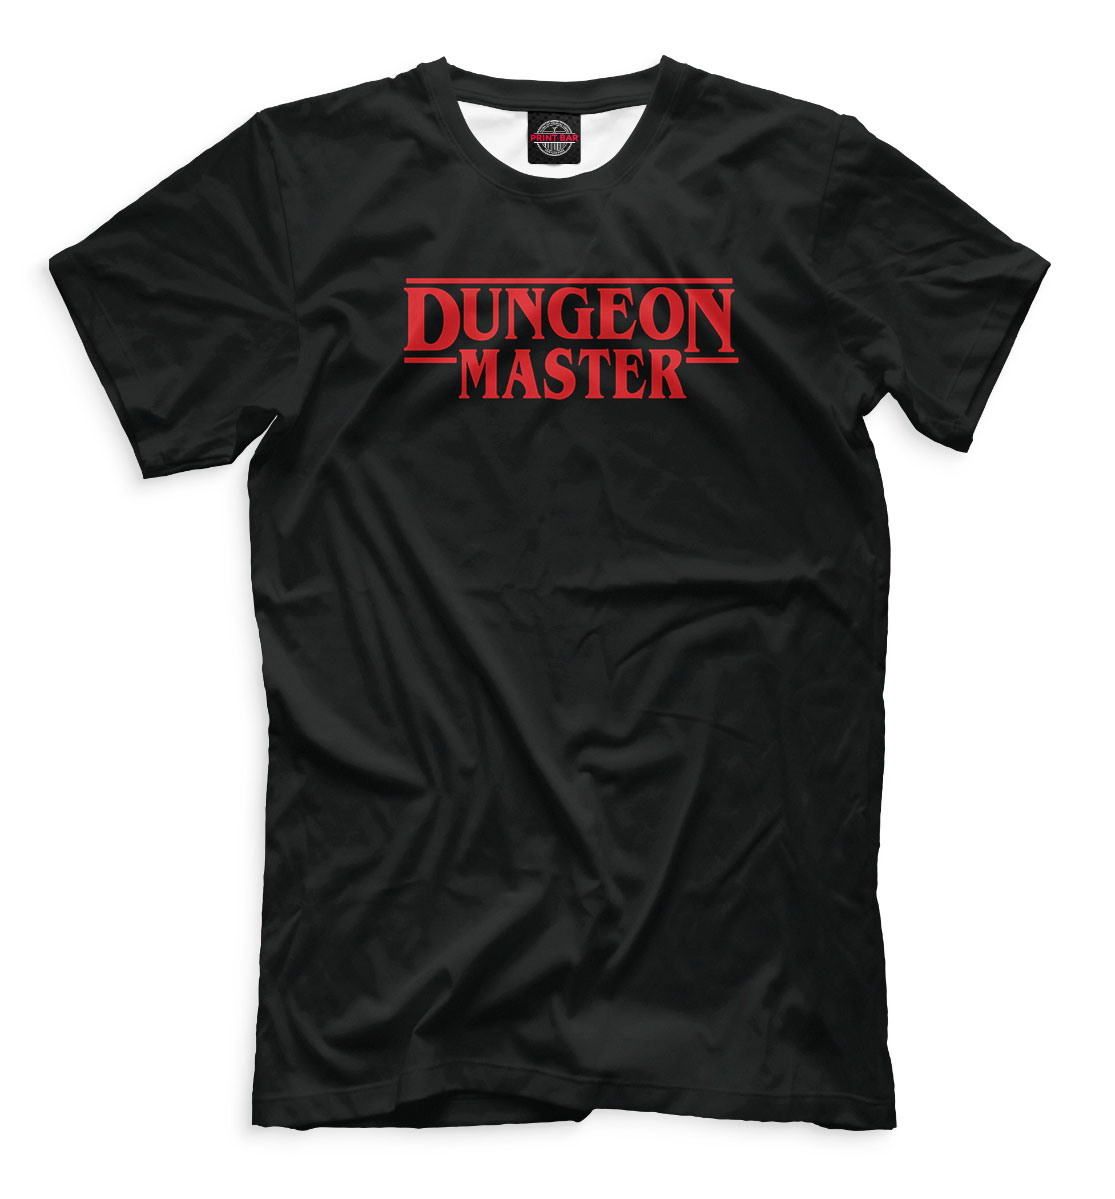 Футболка Dungeon Master для мужчин, артикул: GCM-724012-fut-2mp